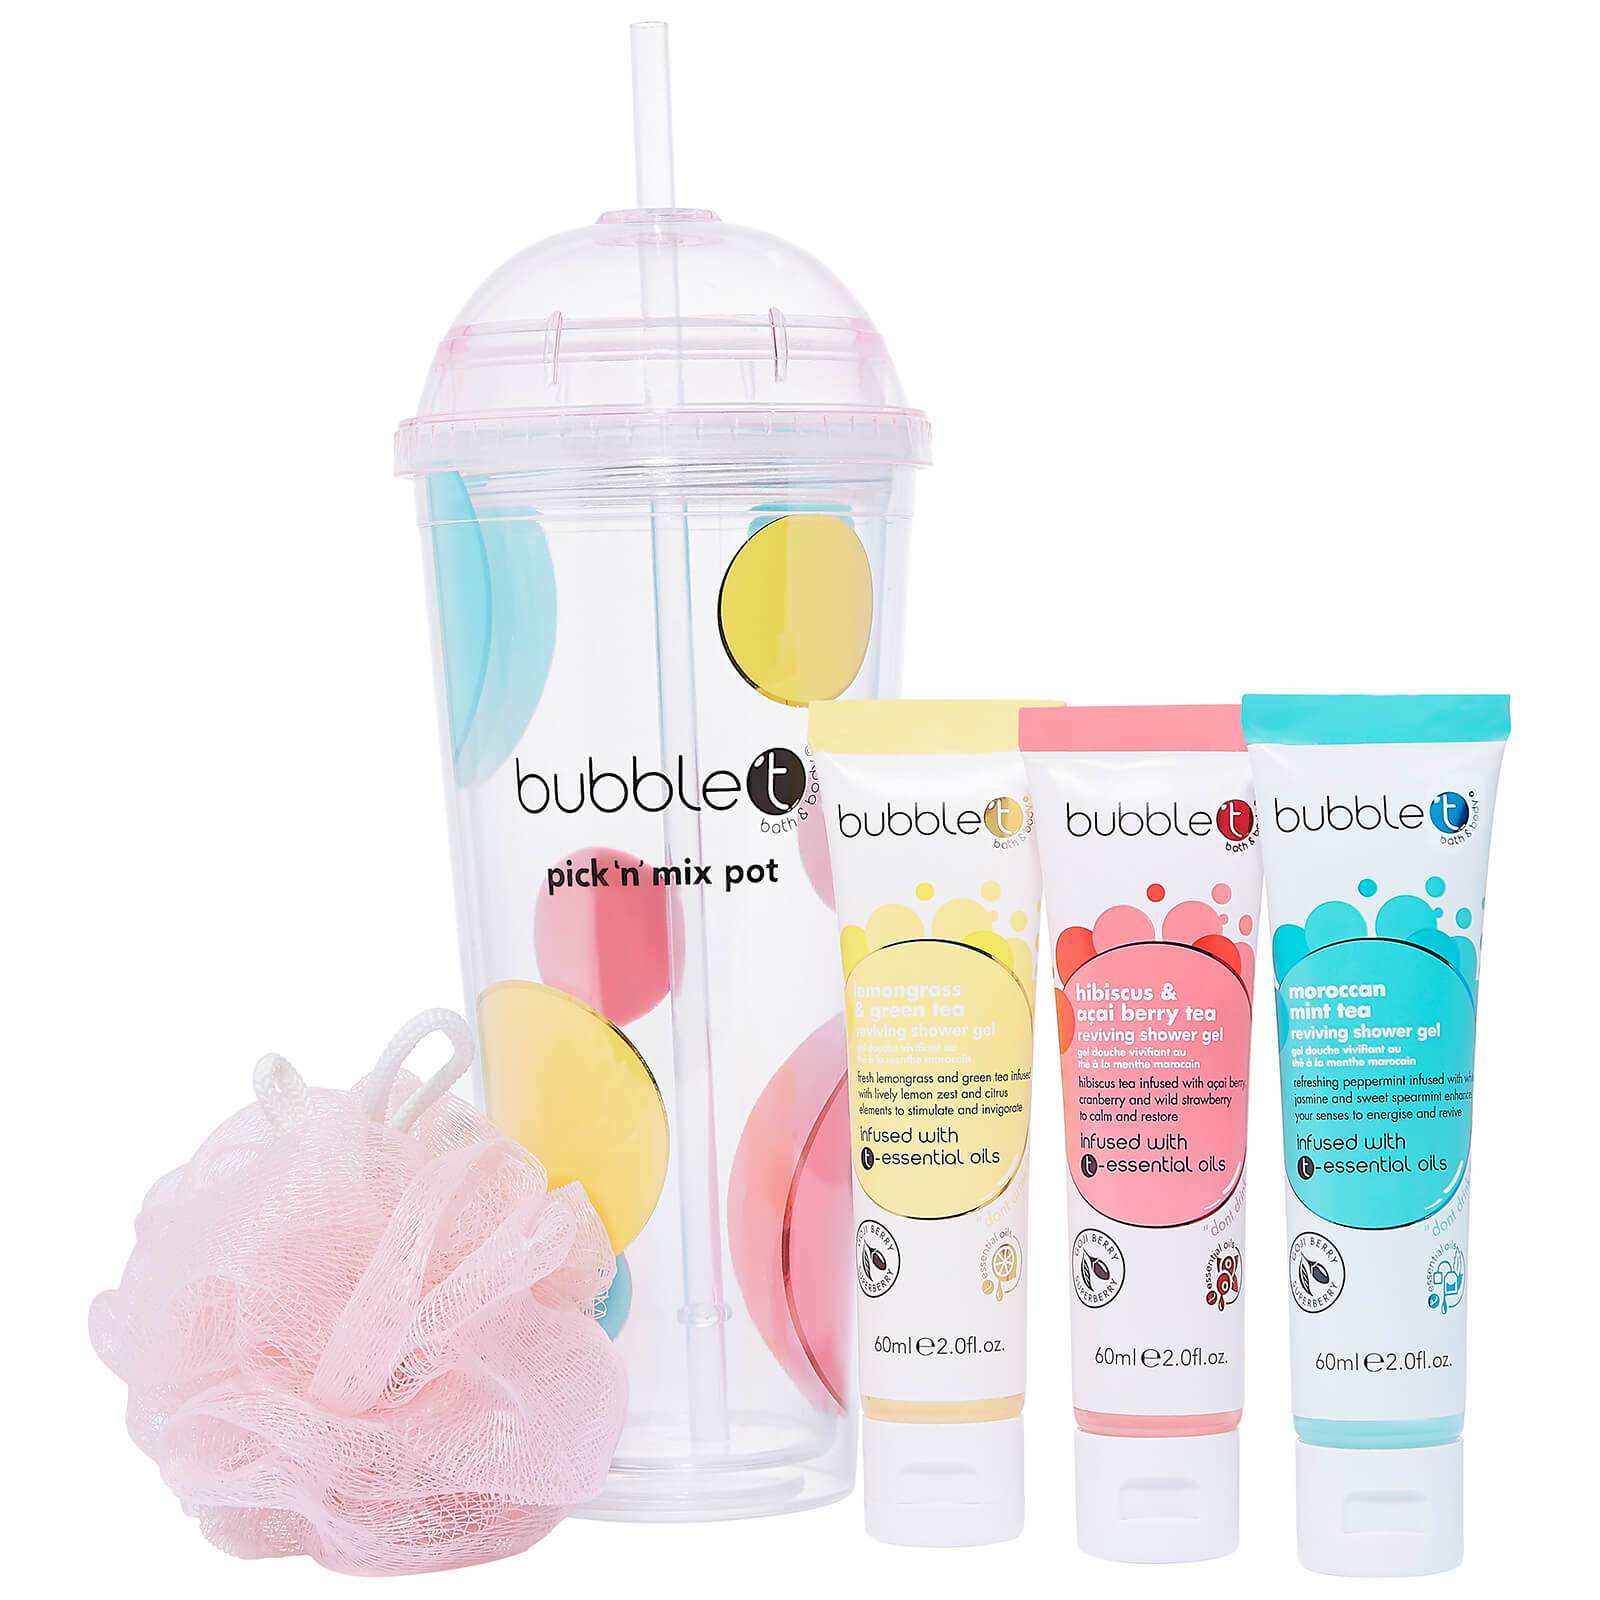 Bubble T Bath & Body - Pick 'n' Mix Pot